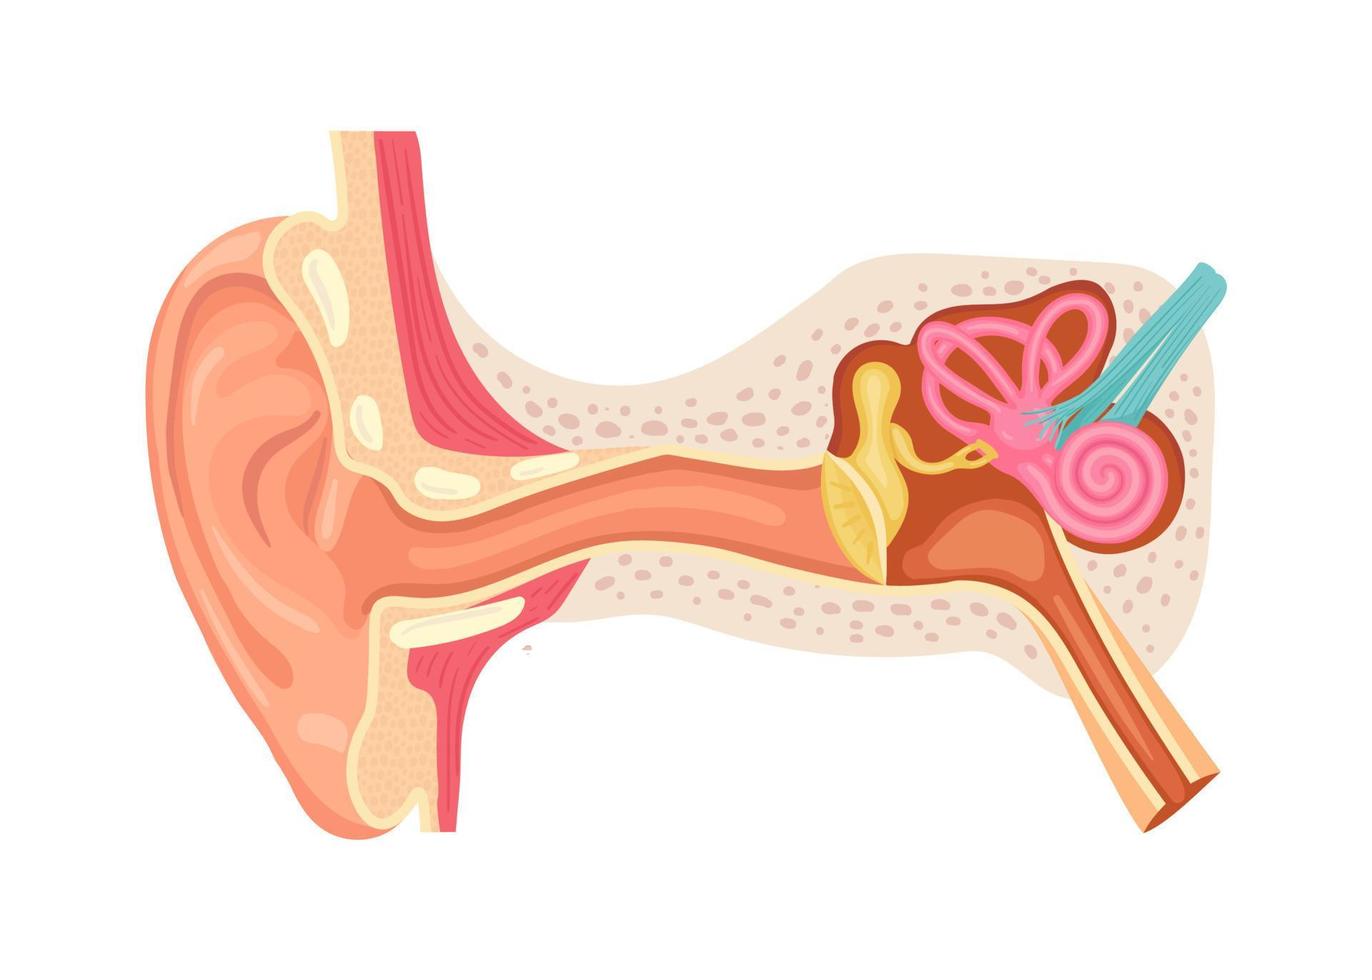 det mänskliga örats anatomi. inre struktur av öronen, medicinsk vektorillustration vektor